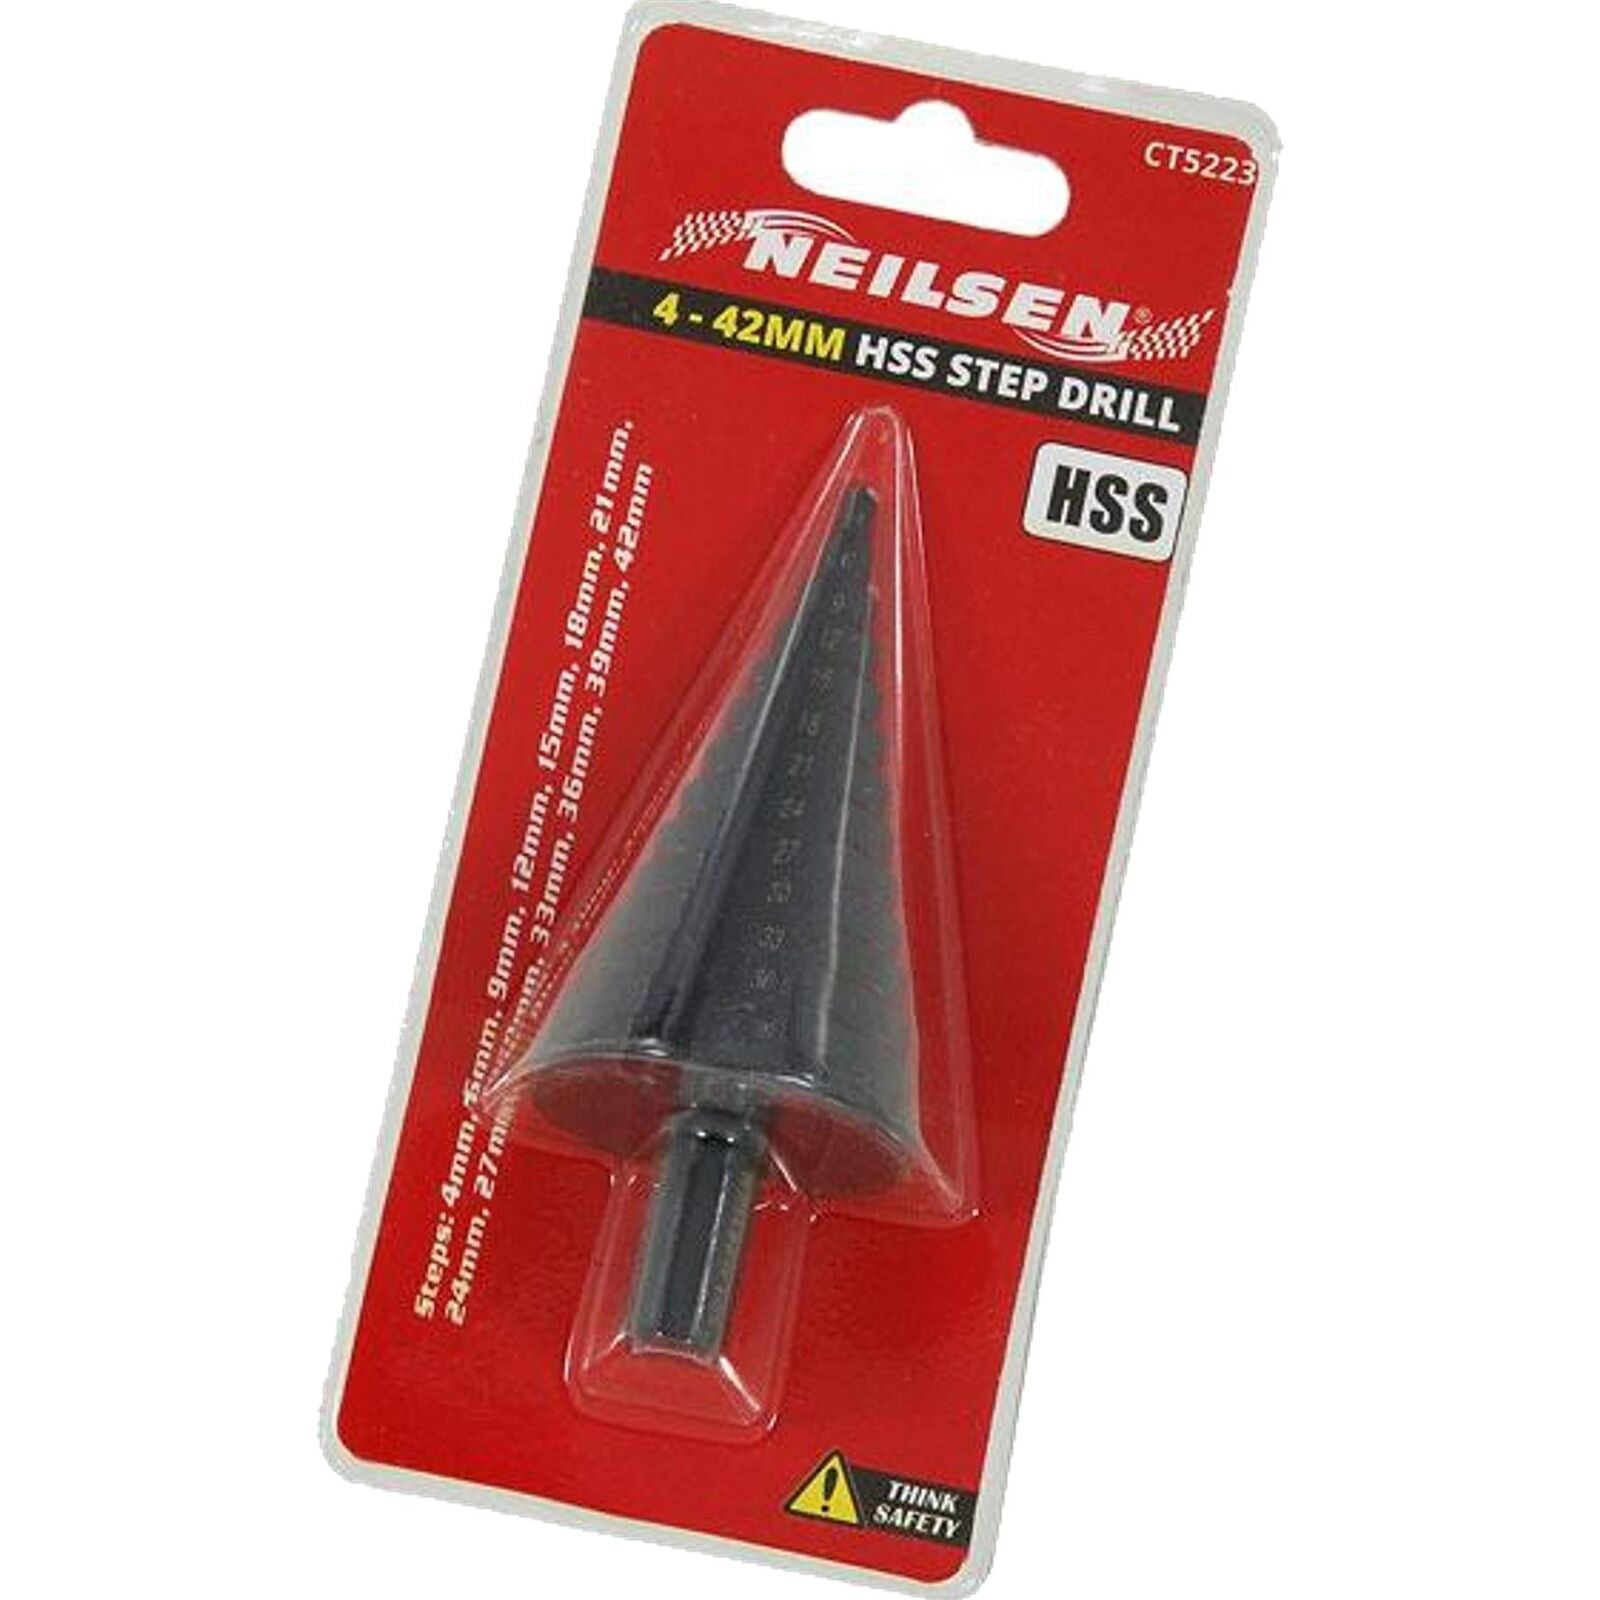 Neilsen Step Drill HSS Steel Titanium Cone Bit Hole Metal Cutter Tool 4 ? 42mm